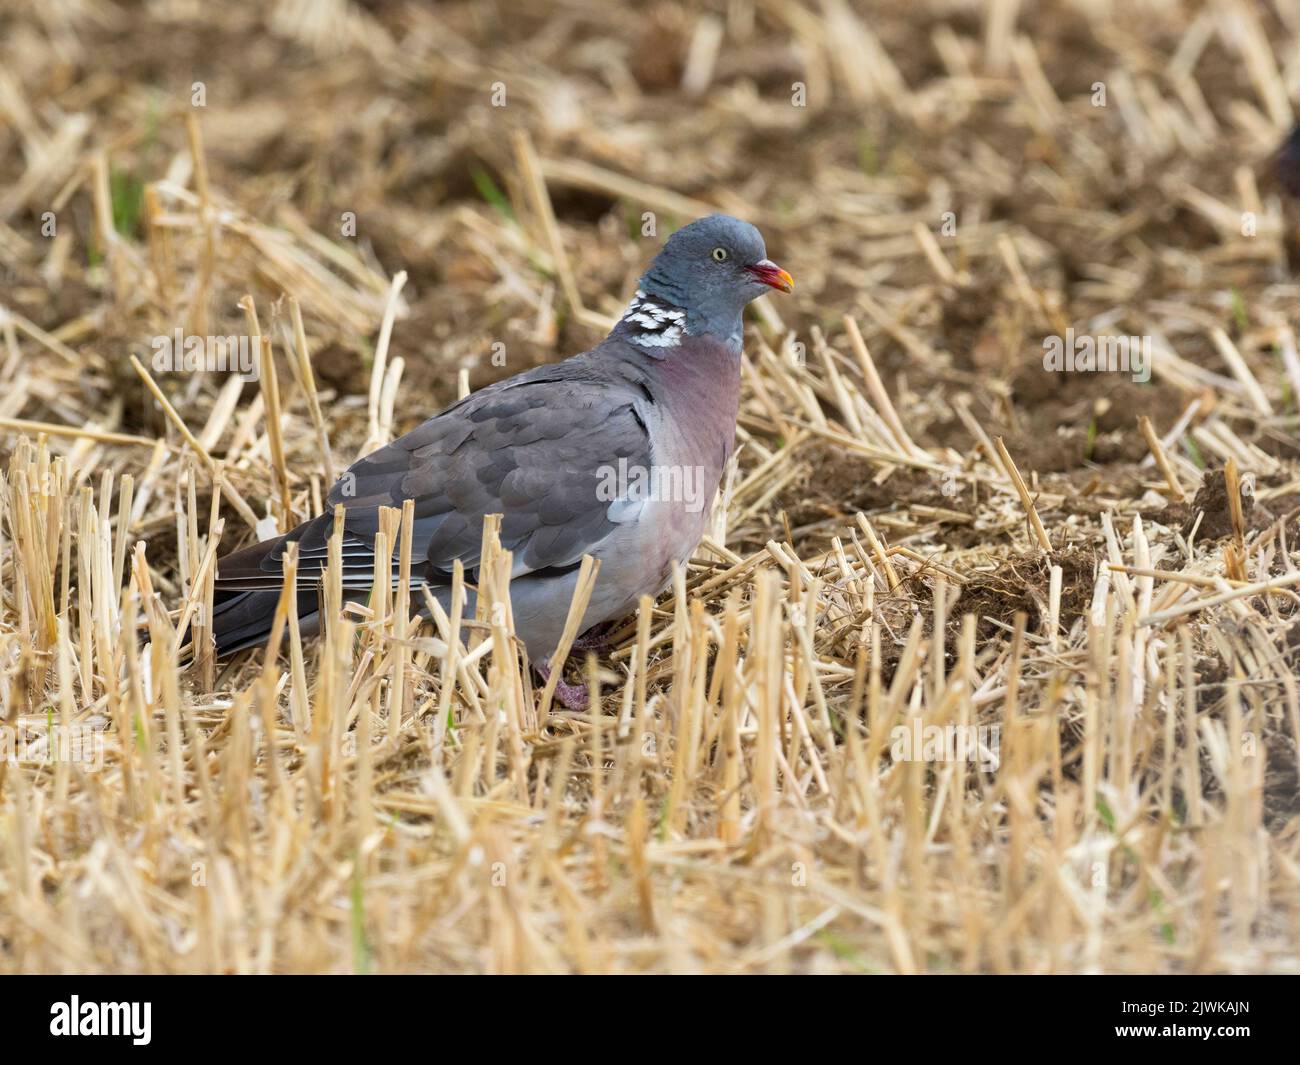 Wood pigeon [Columba palumbus] feeding on spilt grain among the stubble. Stock Photo